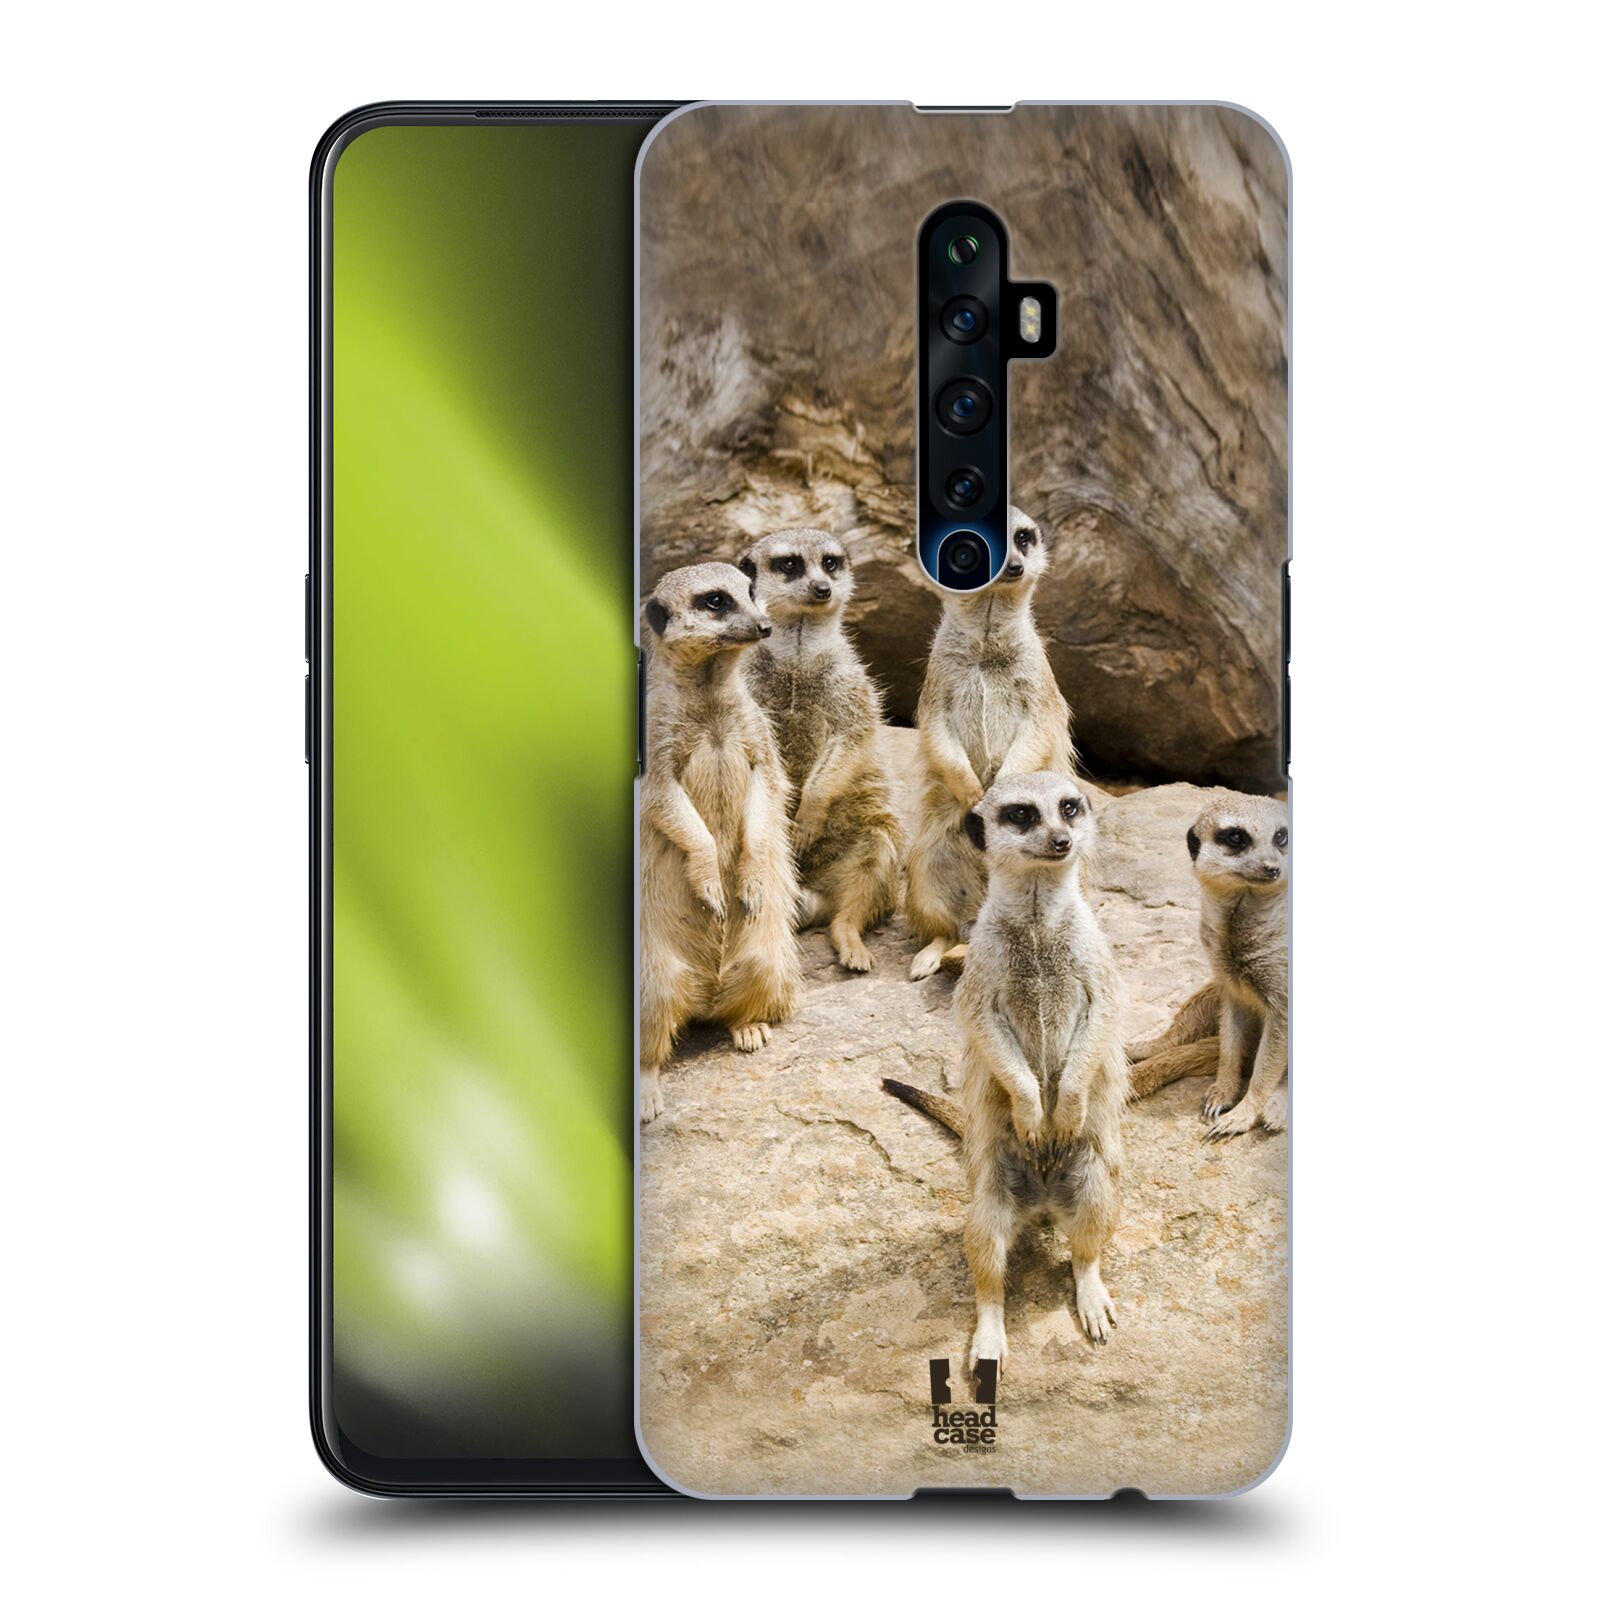 Zadní obal pro mobil Oppo Reno 2Z - HEAD CASE - Svět zvířat roztomilé surikaty